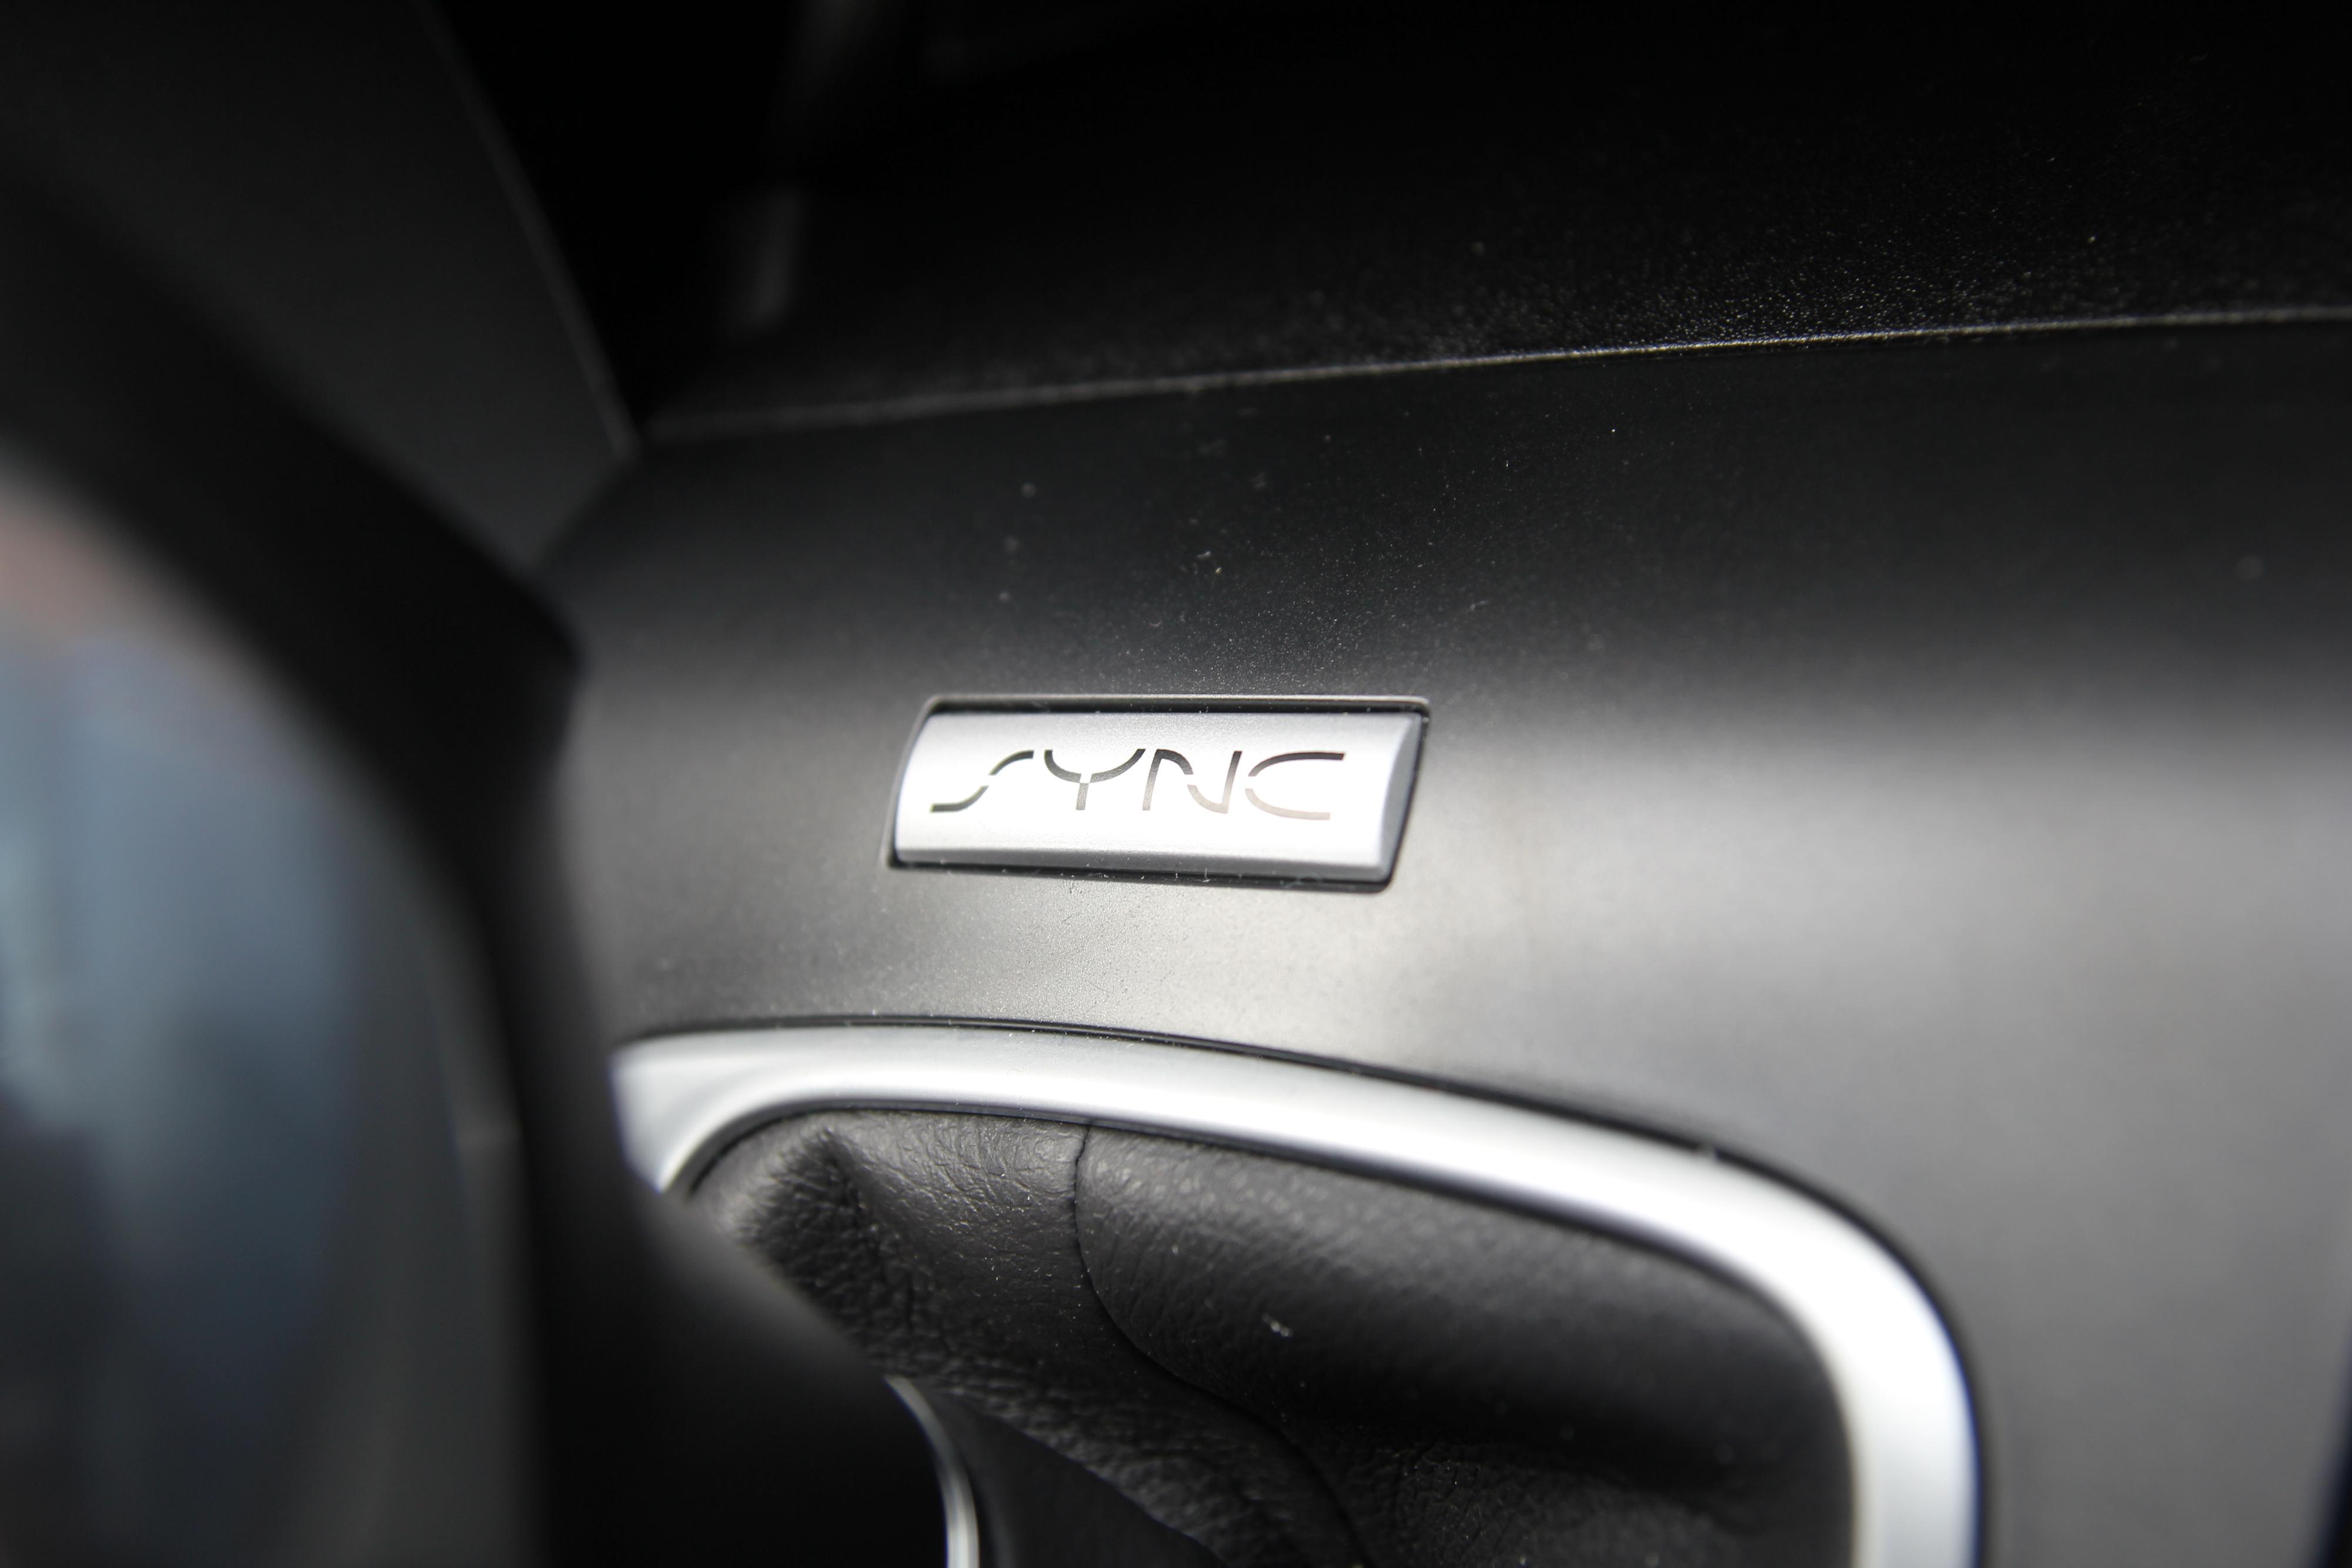 Den originale Sync-logoen har fått en fremtredenede plass like framfor automatgirspaken.